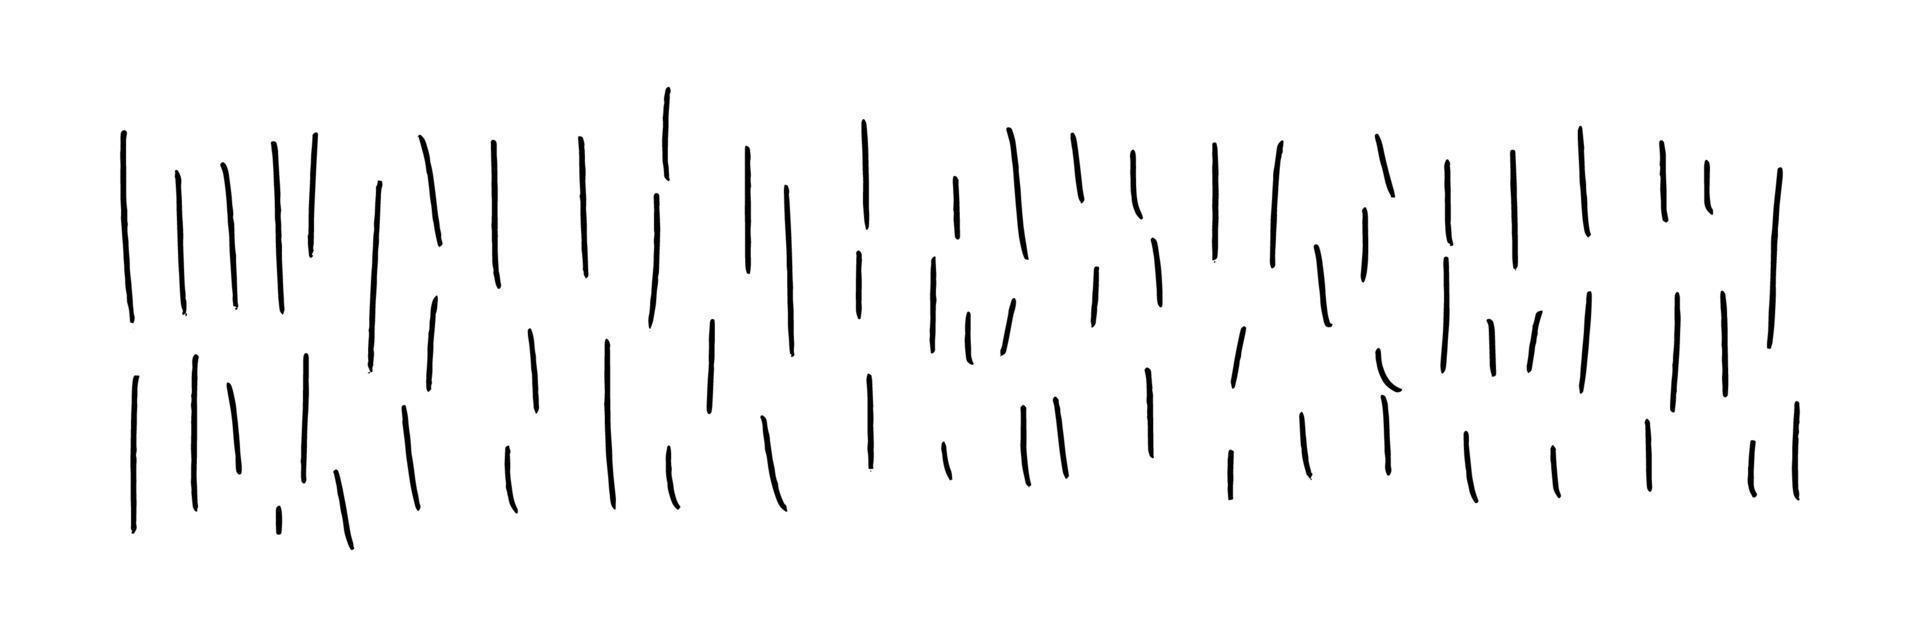 traços de doodle verticais desenhados à mão. textura de fundo horizontal isolada no branco. ilustração em vetor de um elemento gráfico preto.